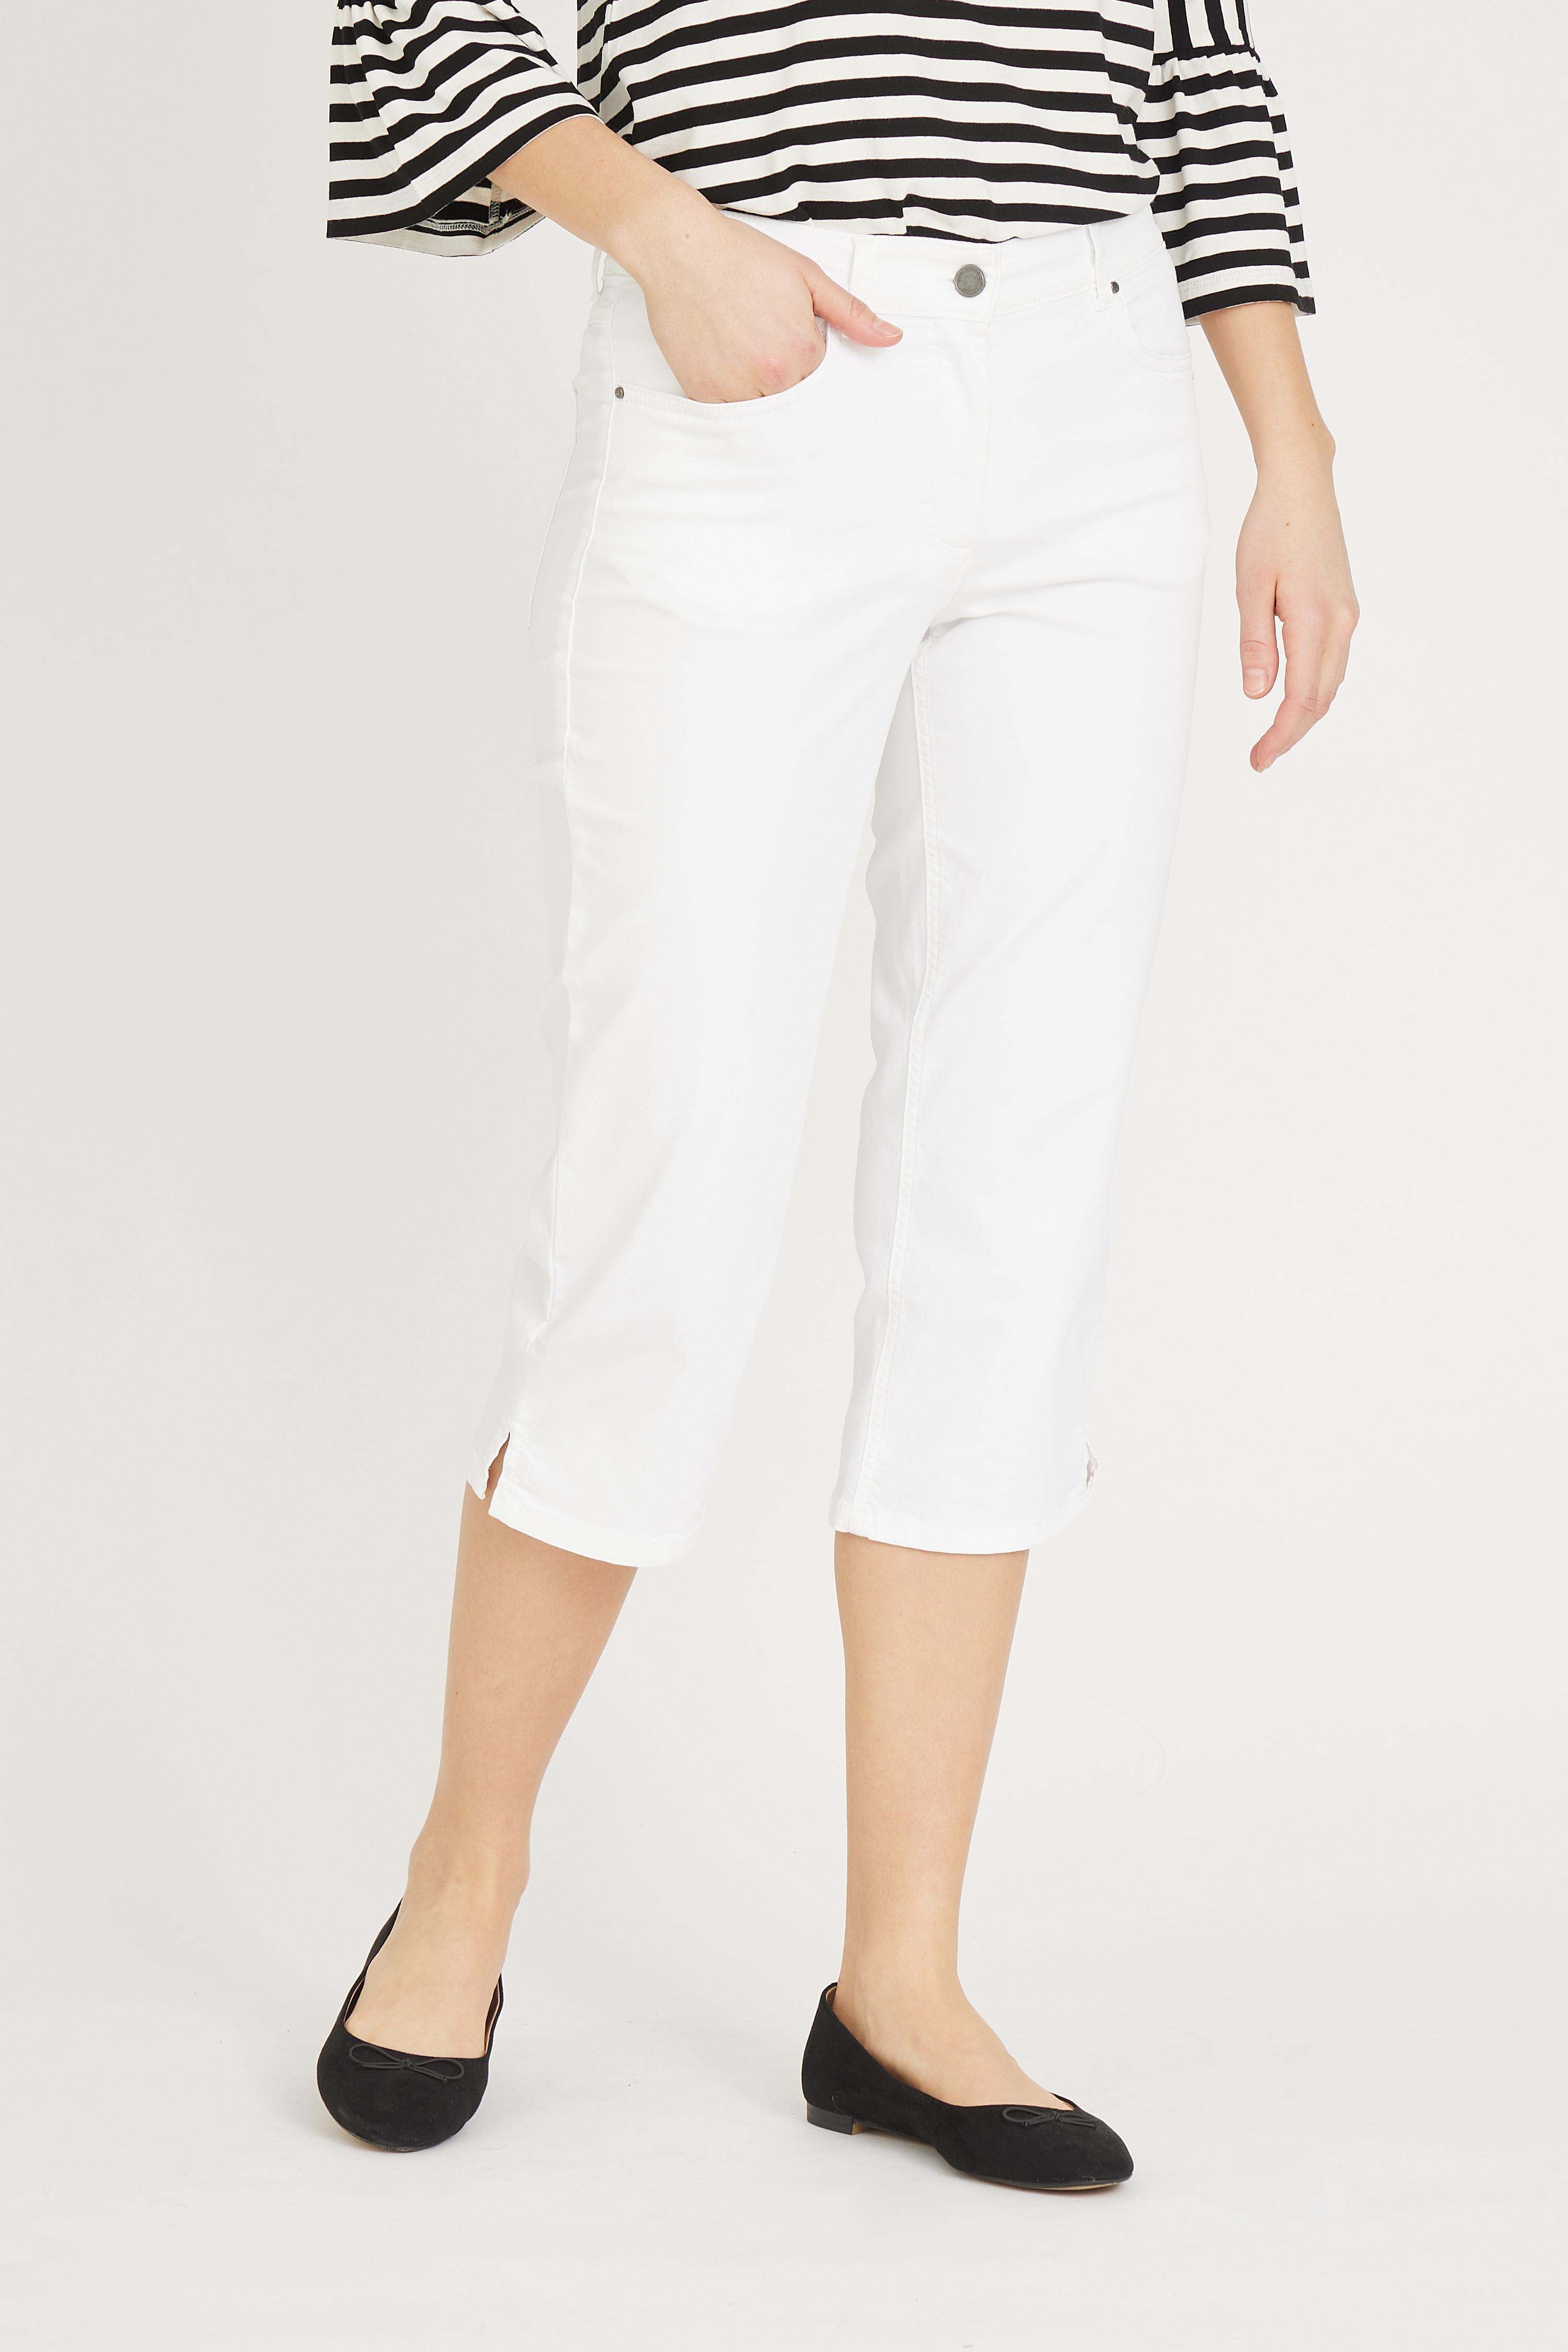 LAURIE  Charlotte Regular Capri Bukser Trousers REGULAR 10100 White